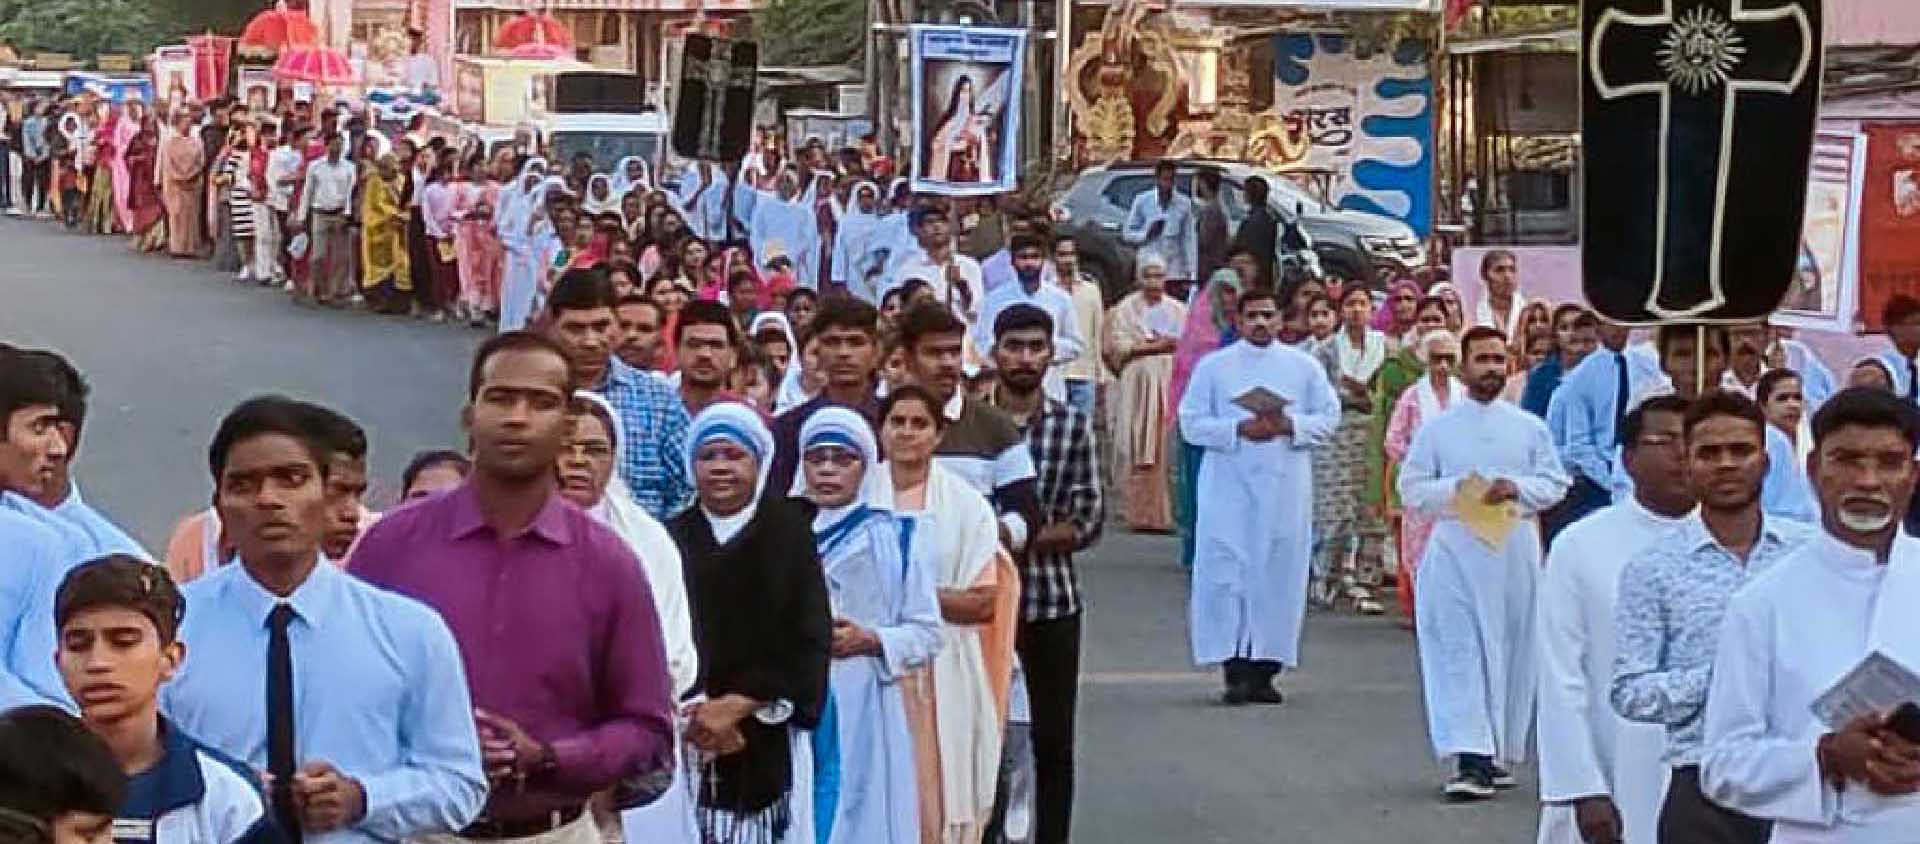 A l'occasion de la fête du Christ-Roi, des hindous ont rejoint les processions de catholiques qui célèbraient le Christ-Roi | DR